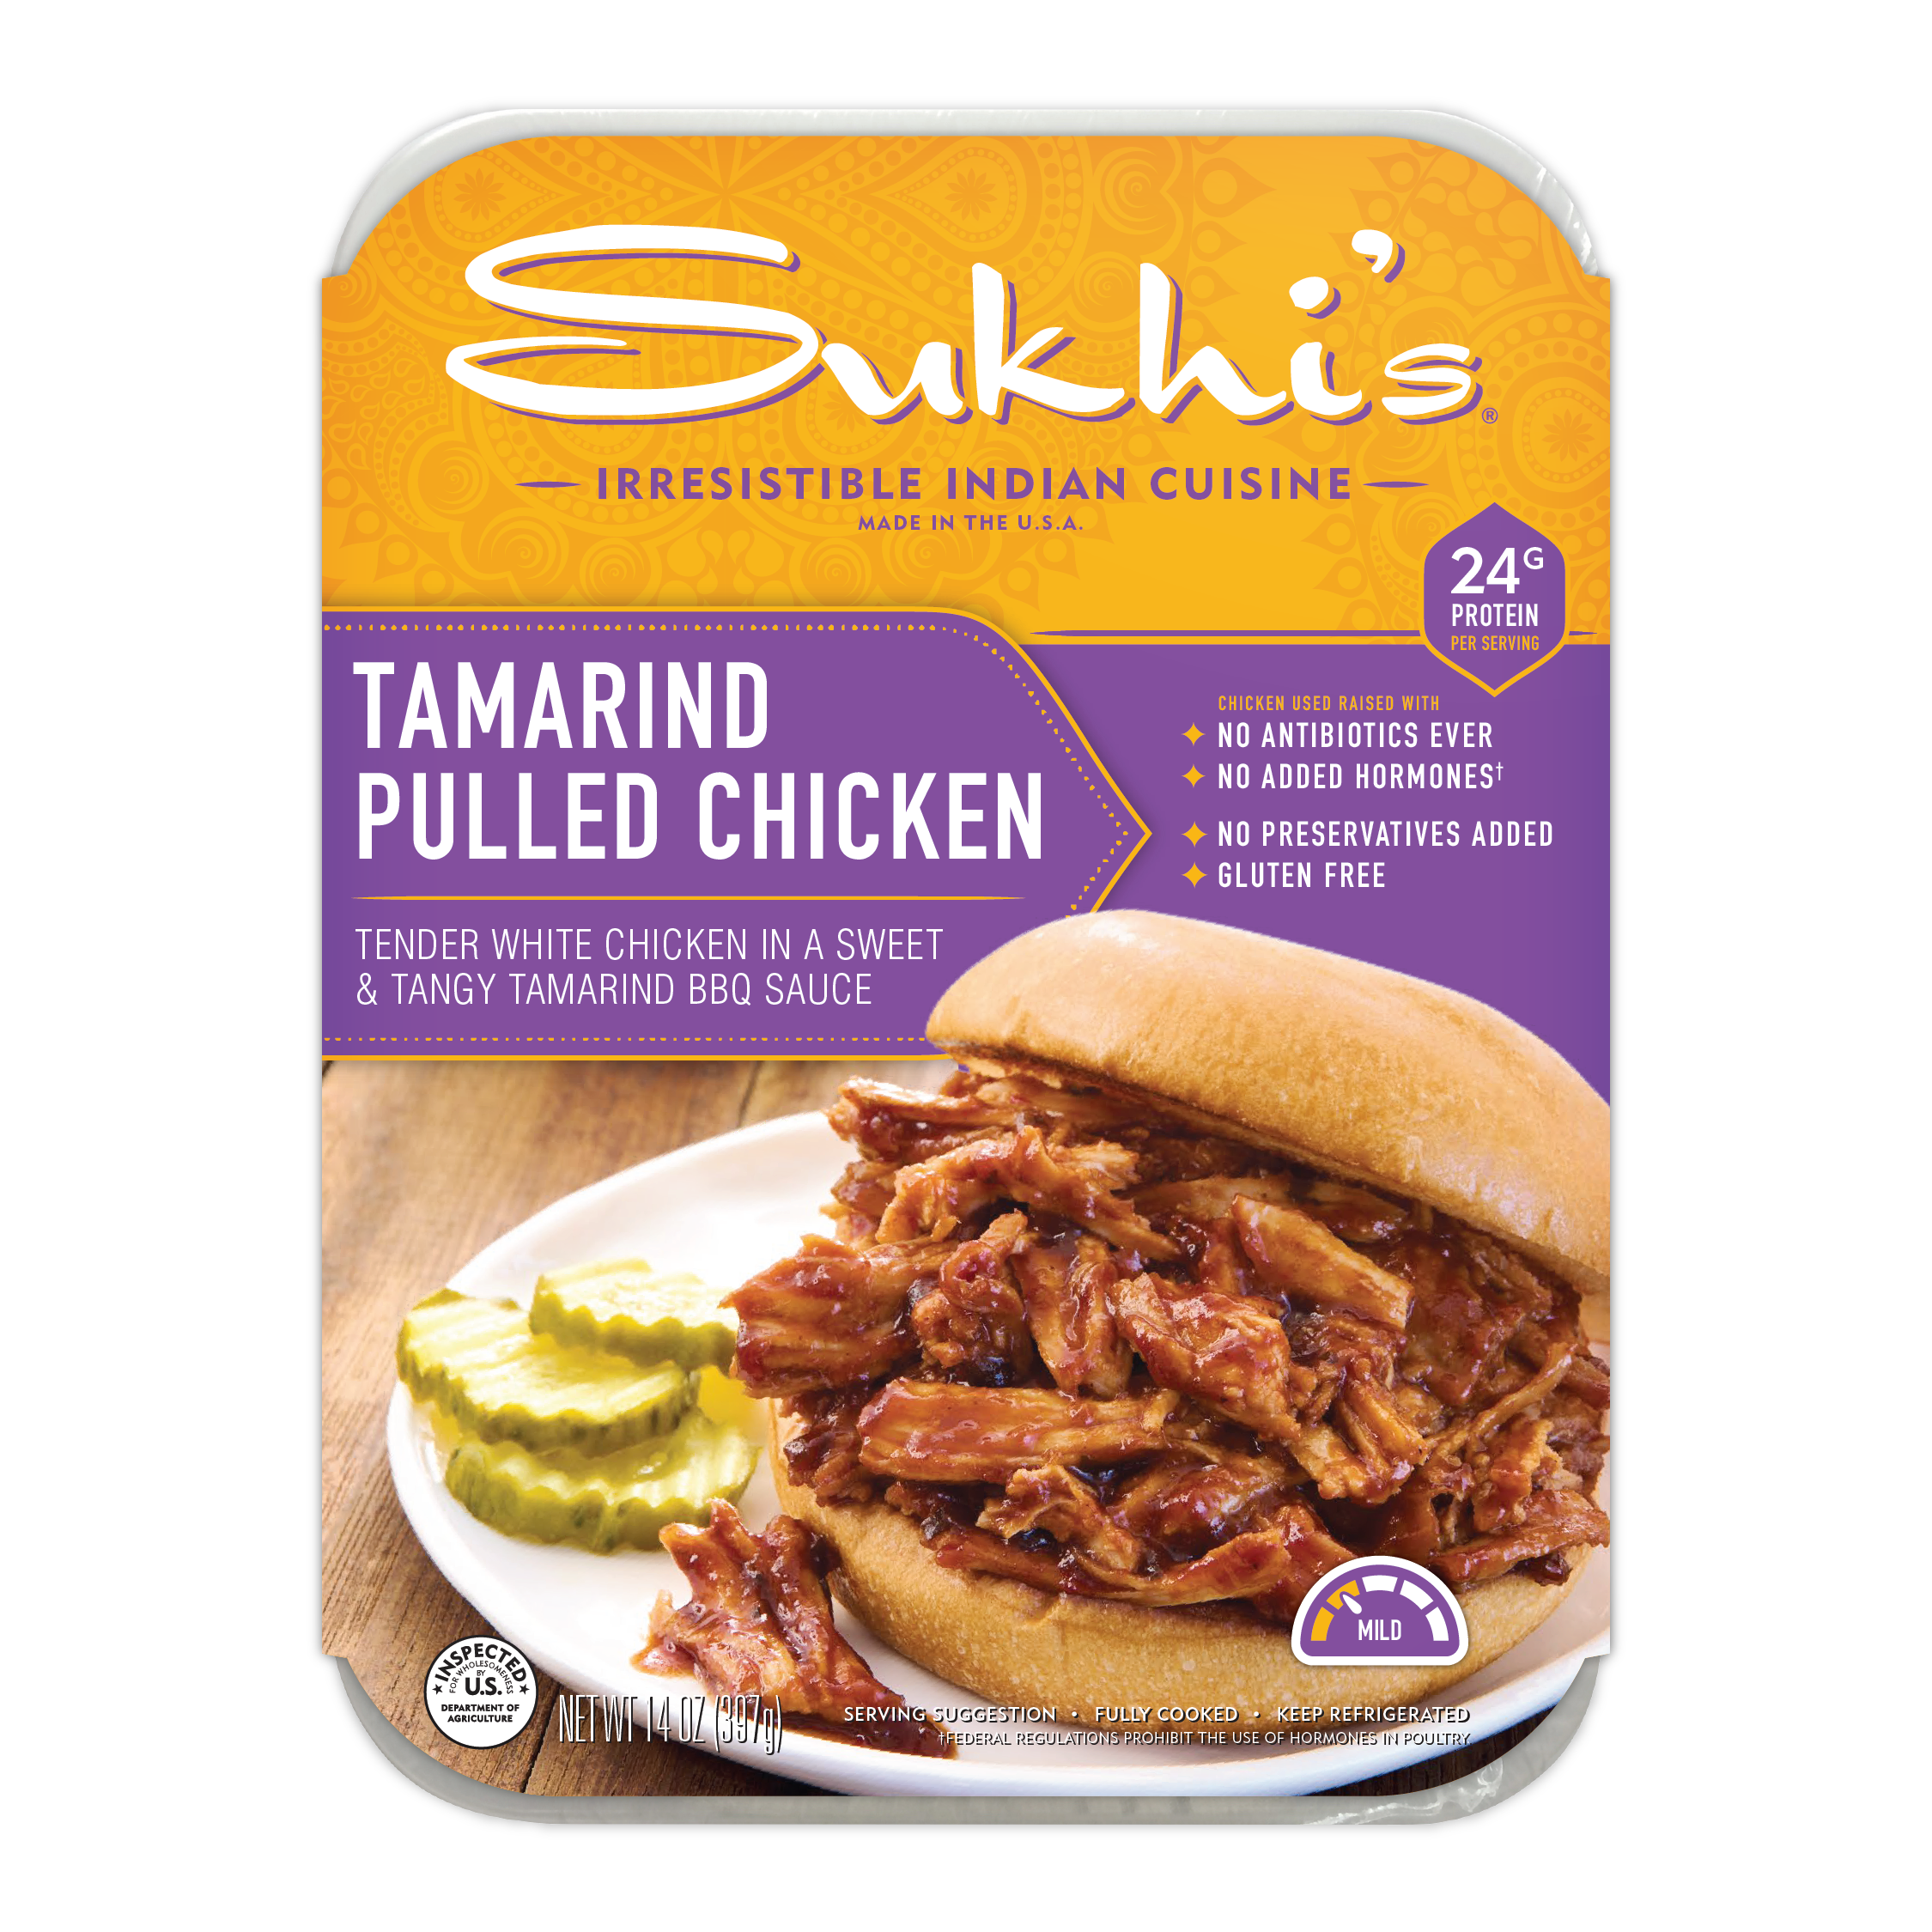 Tamarind Pulled Chicken